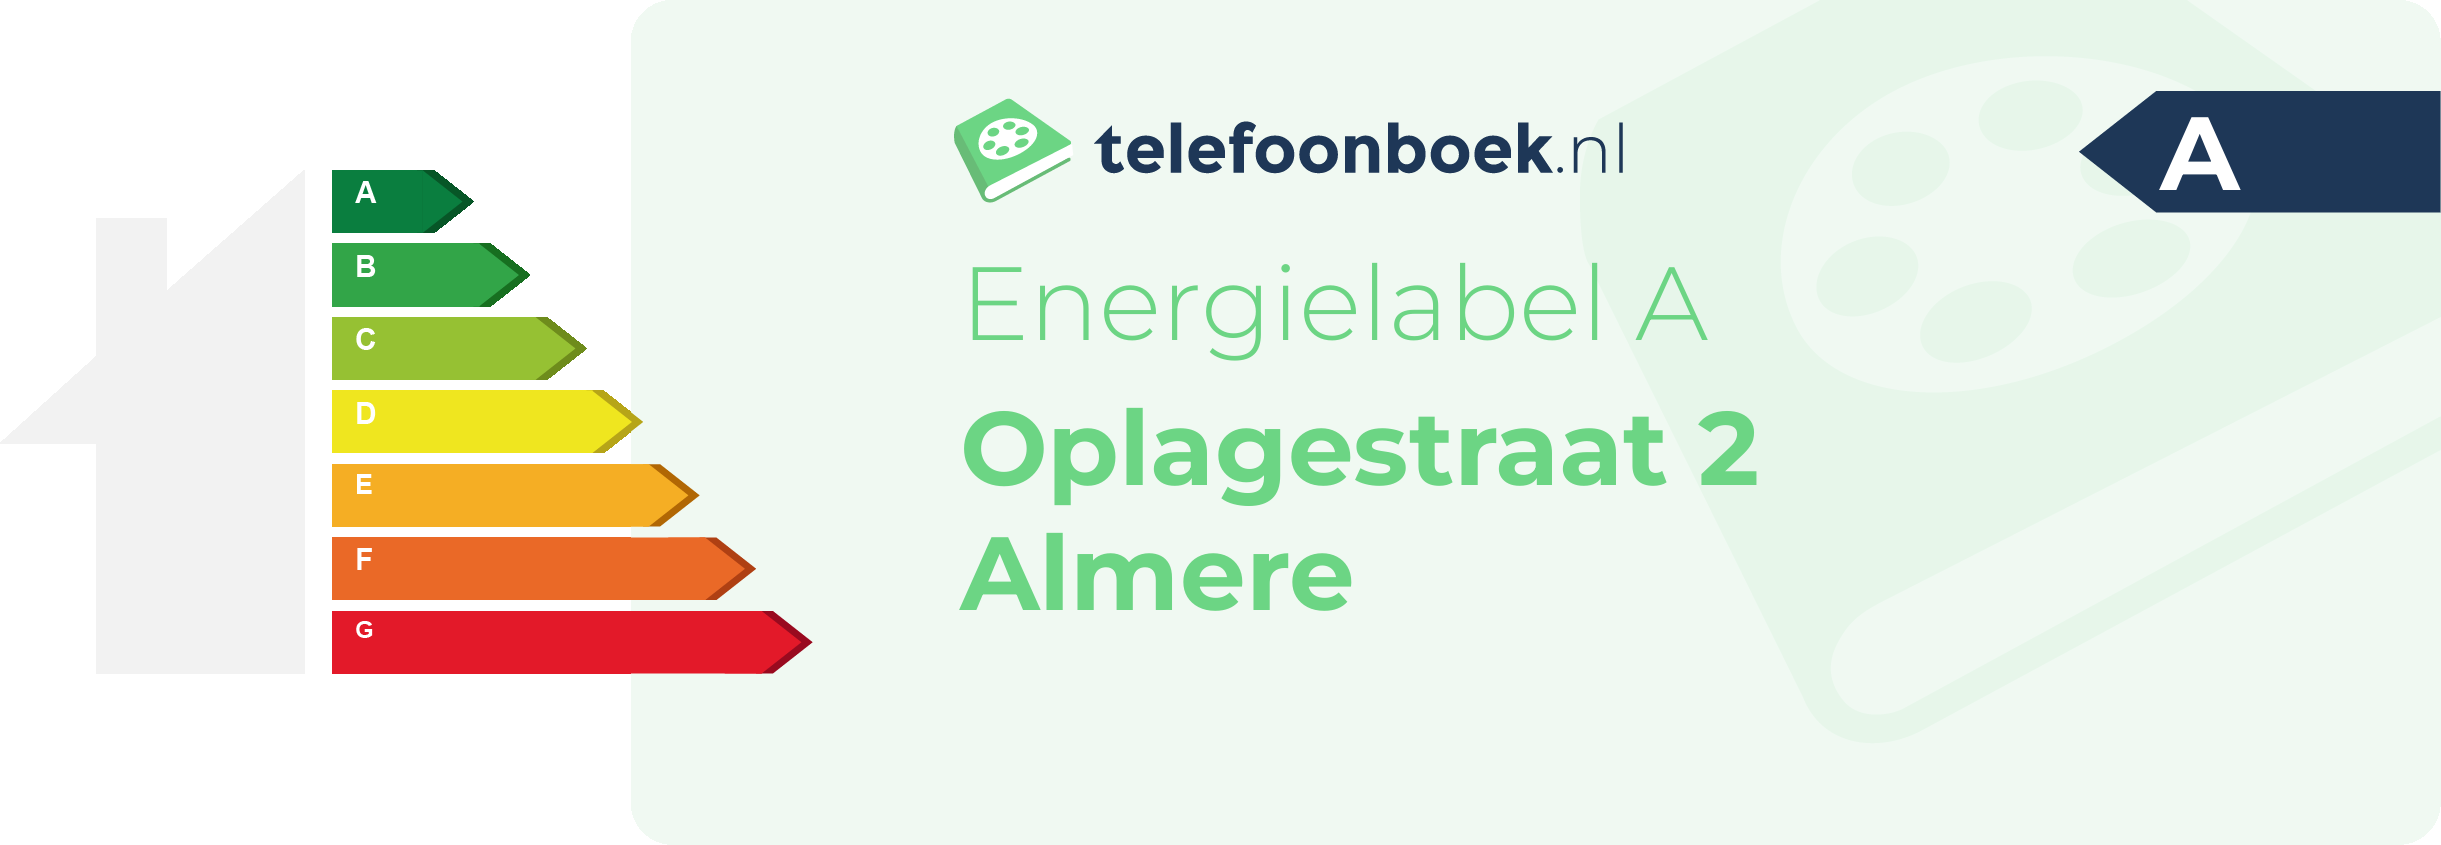 Energielabel Oplagestraat 2 Almere